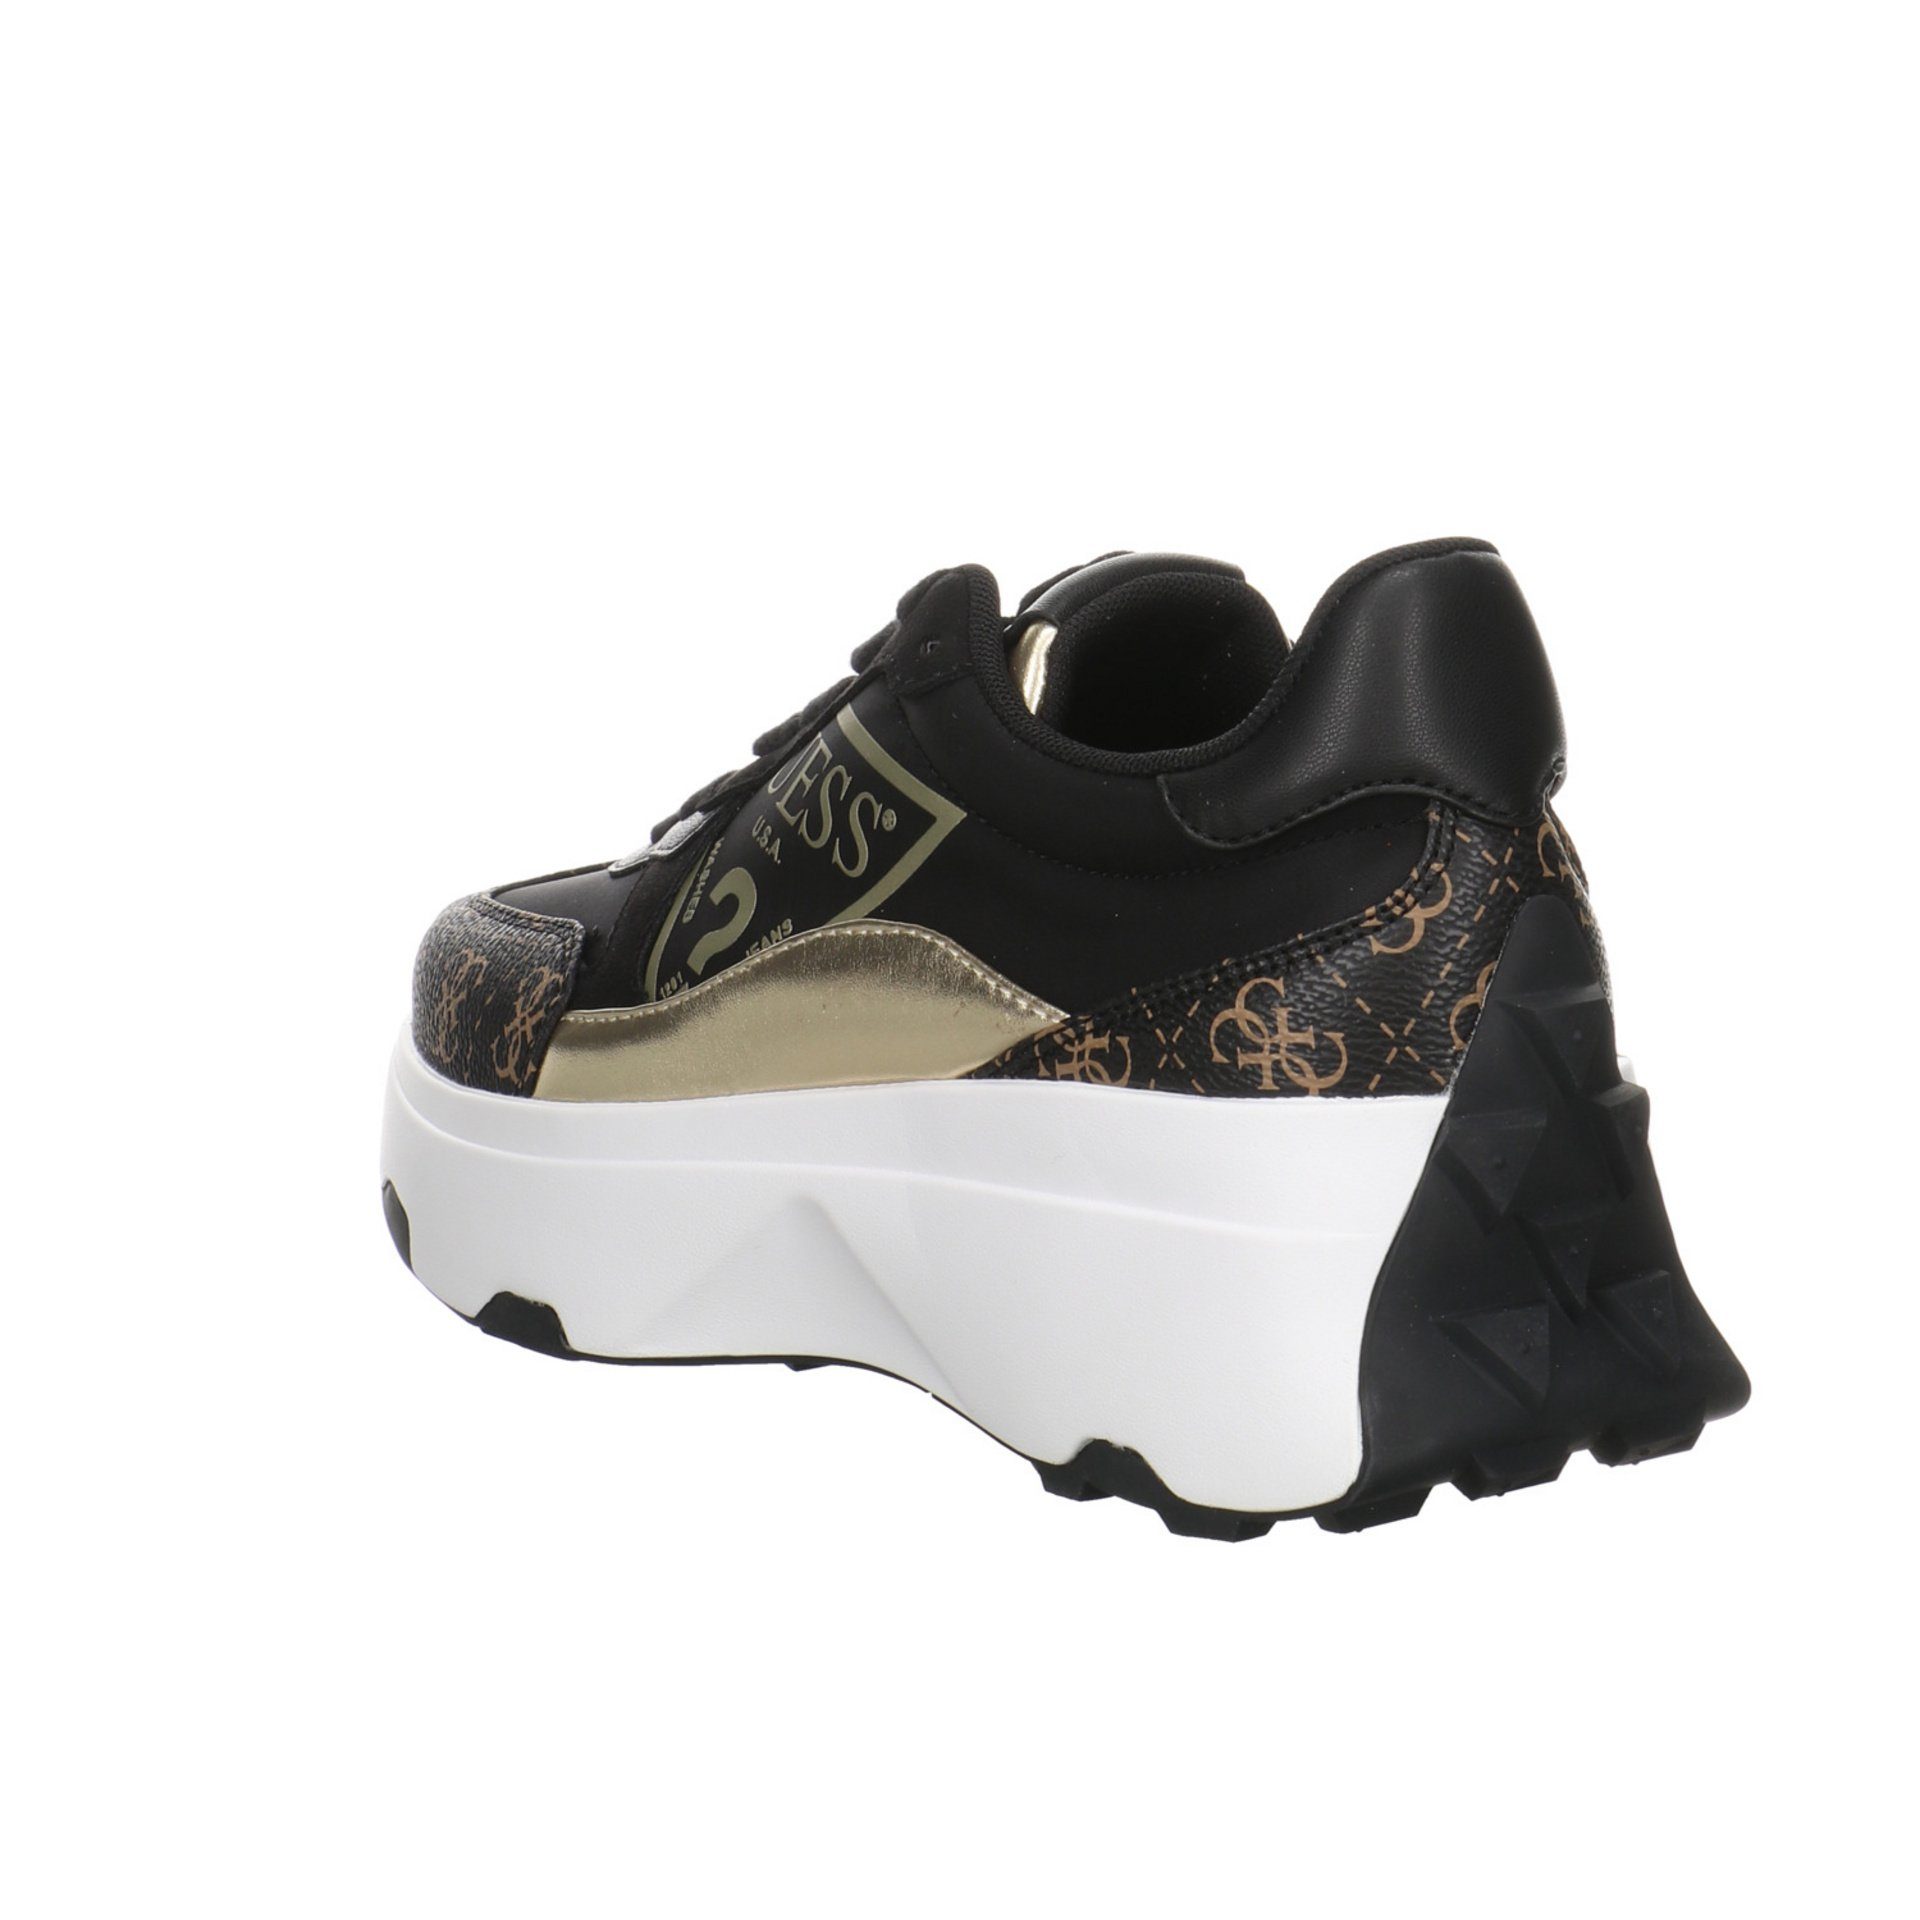 Synthetikkombination Schnürschuh Damen Calebb Sneaker Runner black/brown/ocra Guess Schuhe Sneaker